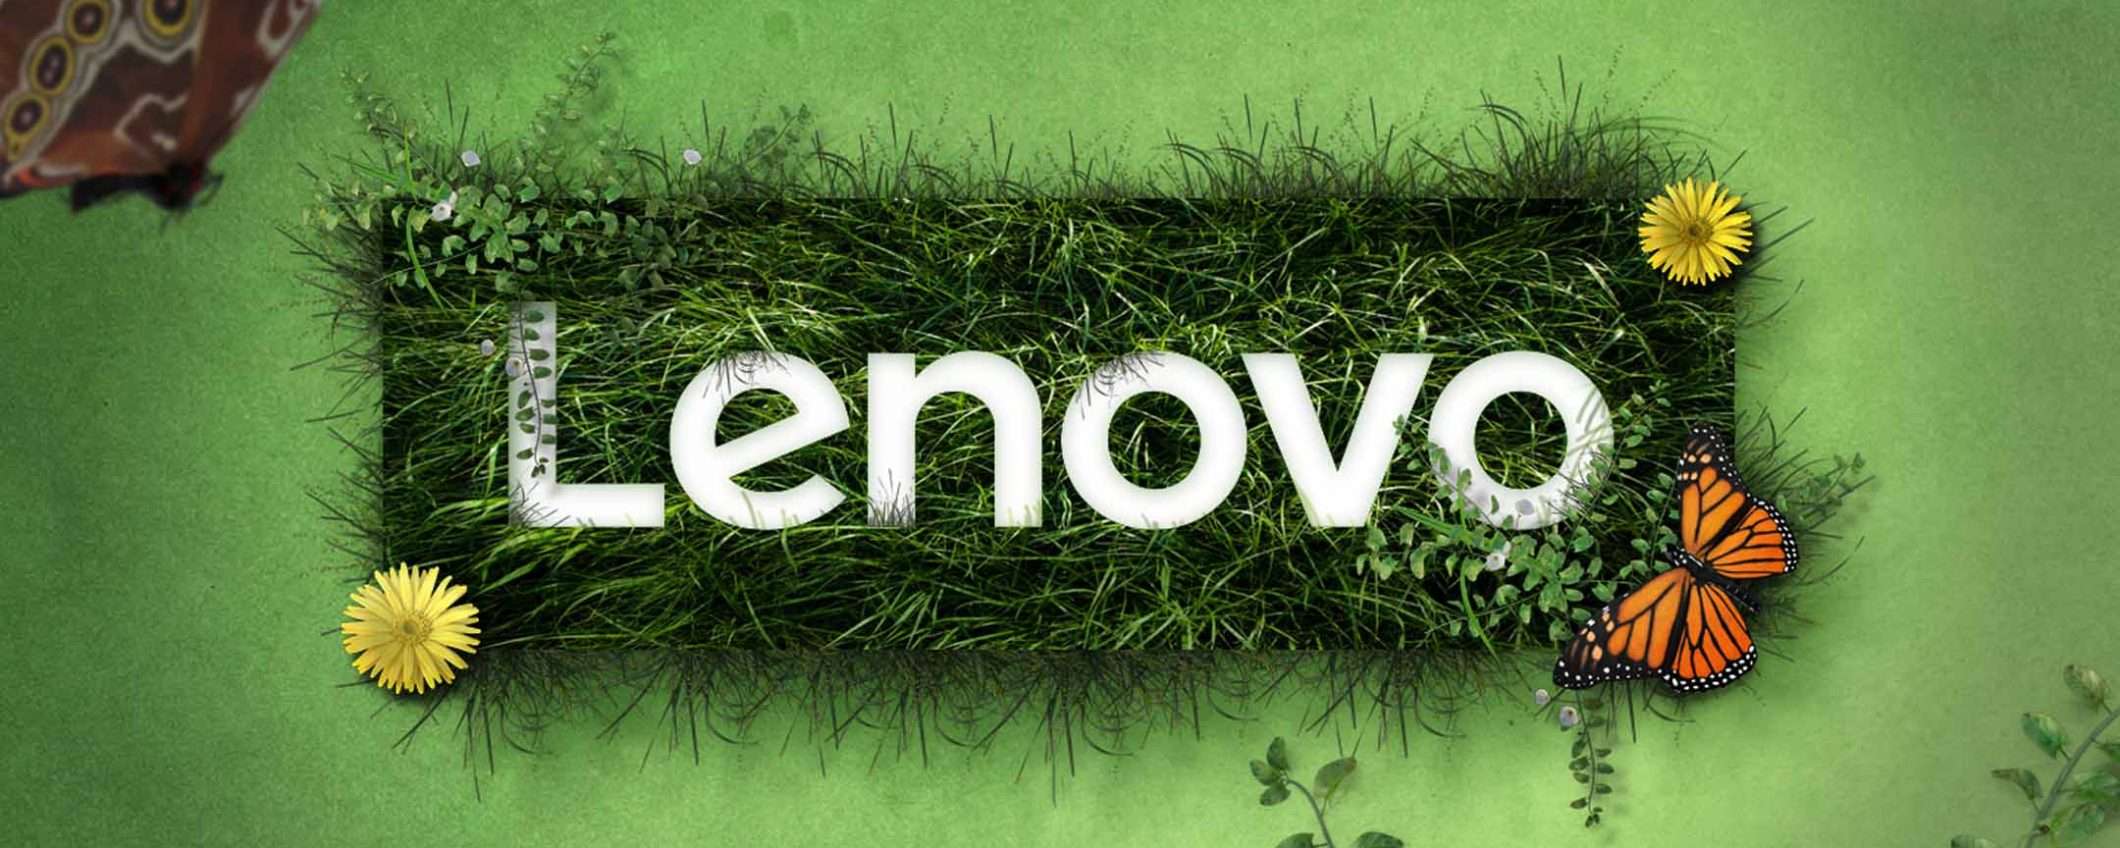 Filippo Gramigna per la Media Strategy di Lenovo